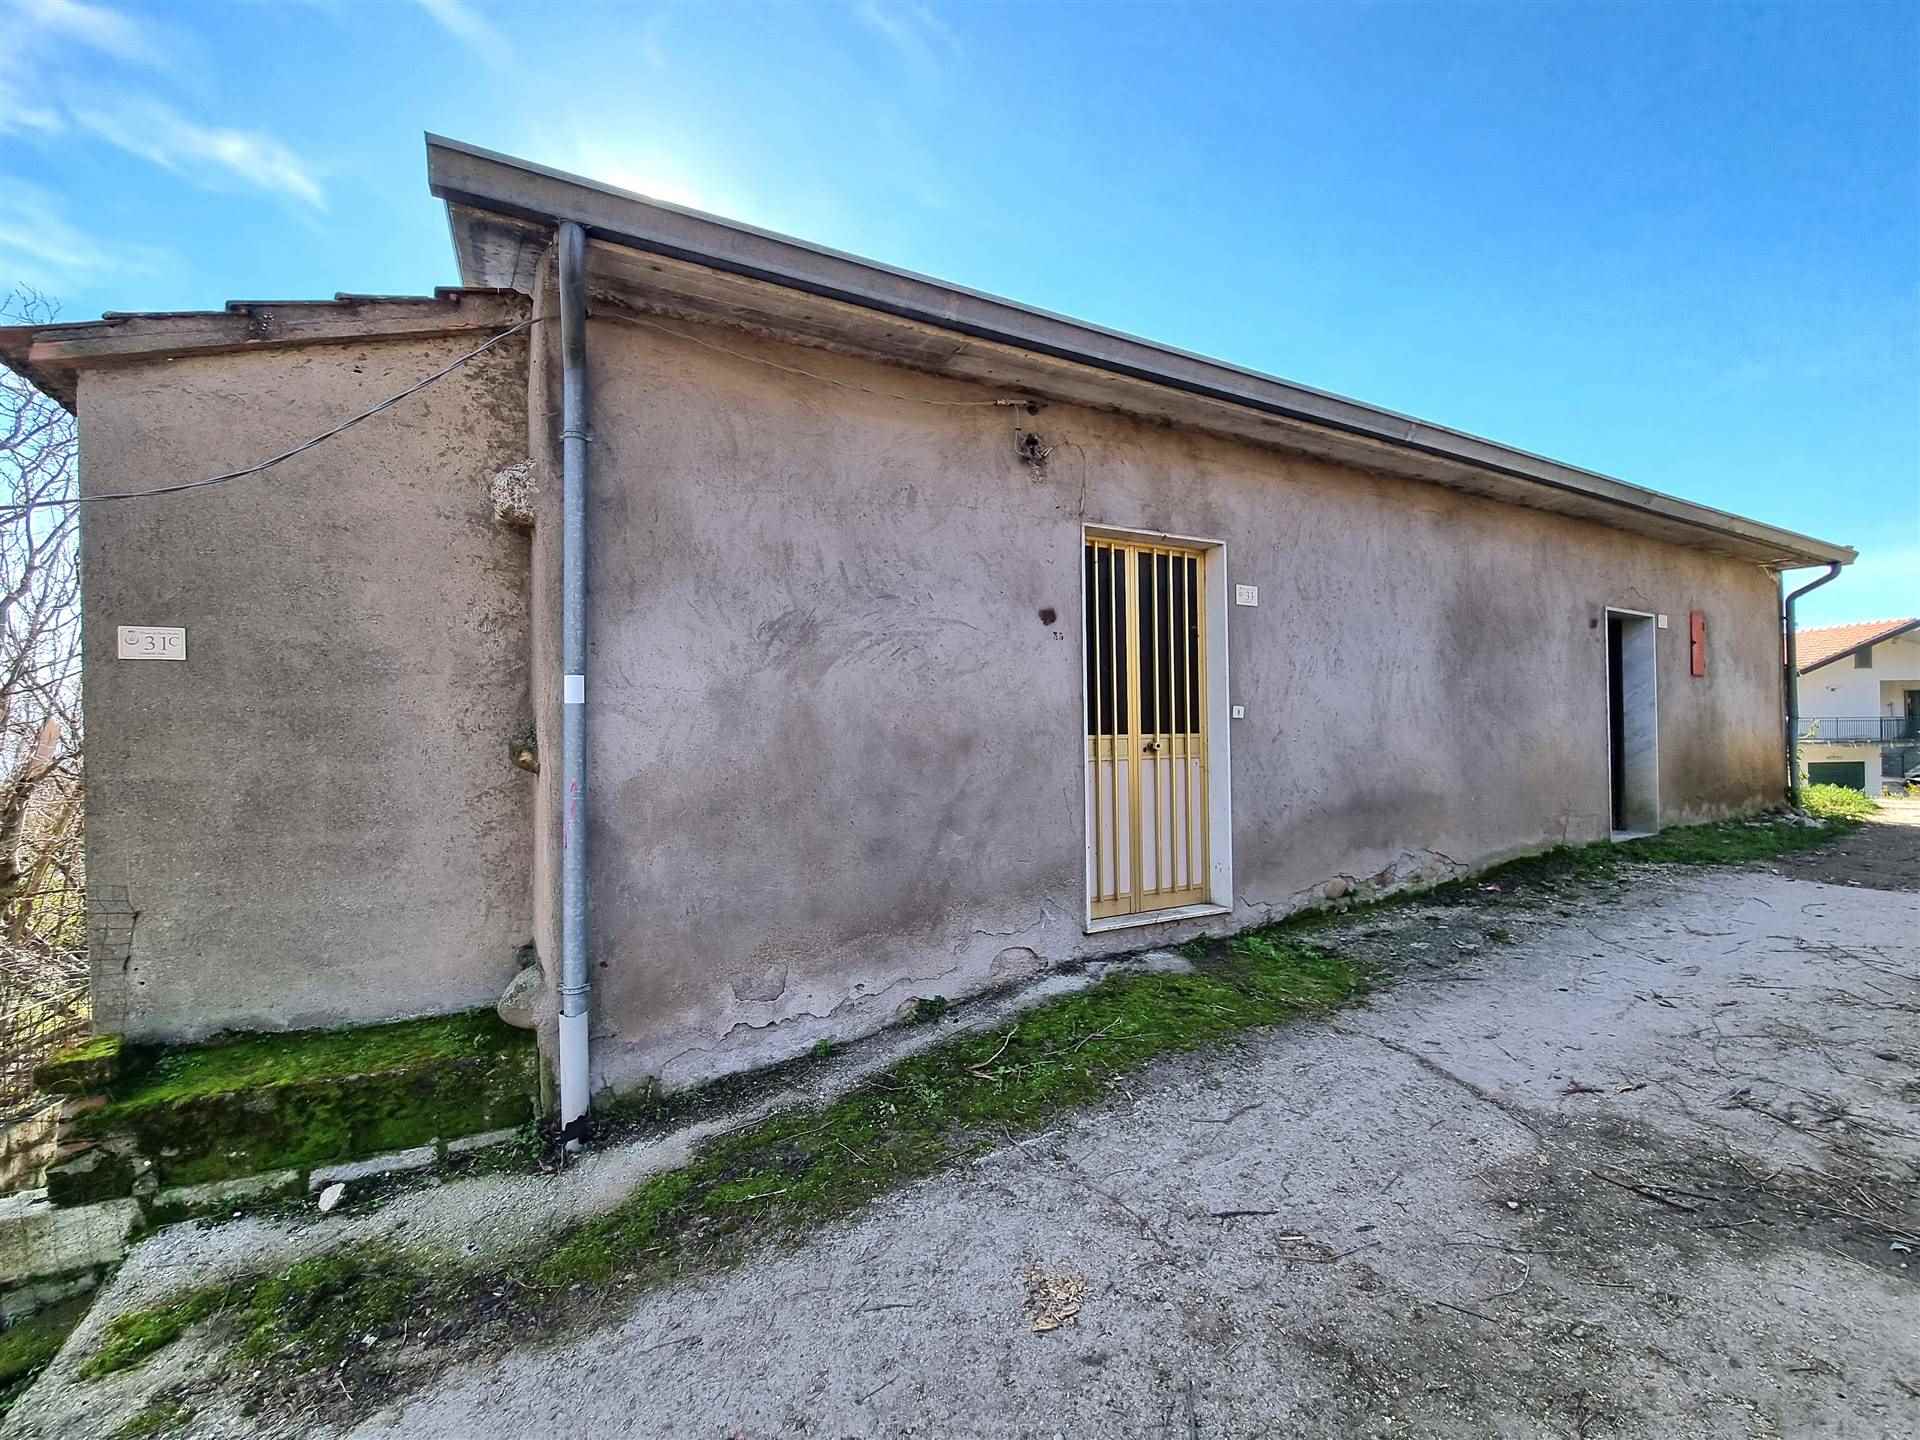 Rustico / Casale in vendita a Santa Paolina, 2 locali, zona Località: SALA, prezzo € 12.000 | CambioCasa.it